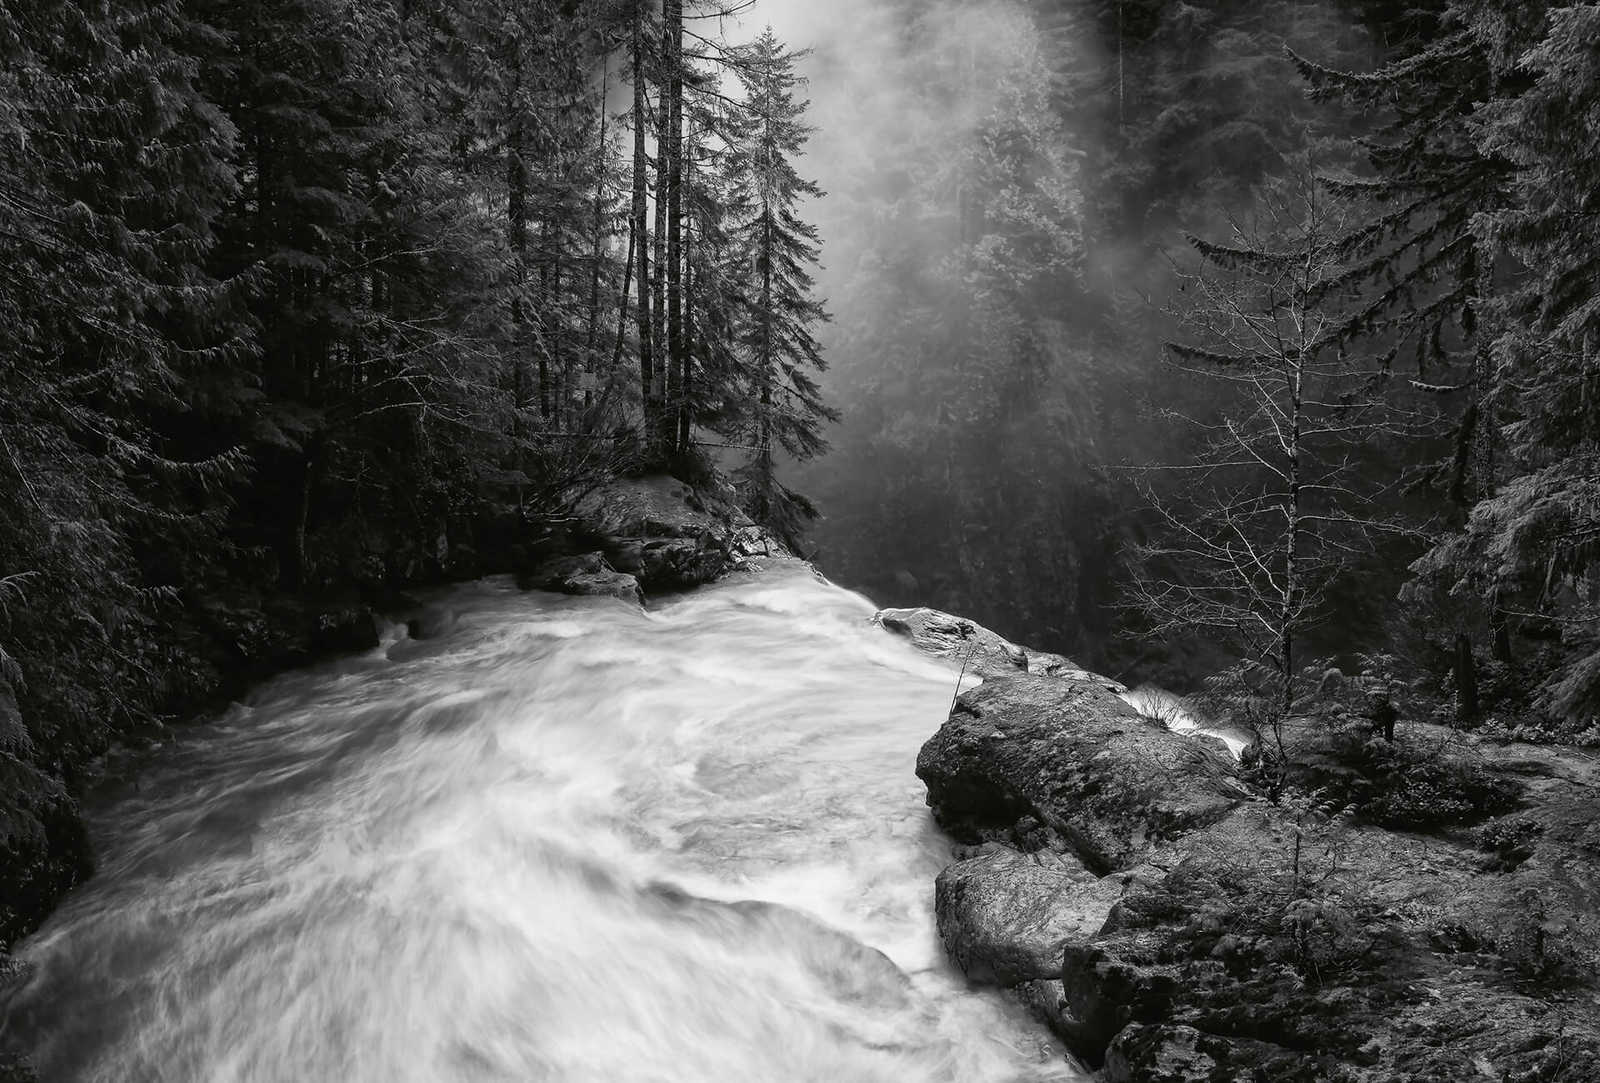         Fototapete Wald mit Wasserfall – Schwarz, Weiß, Grau
    